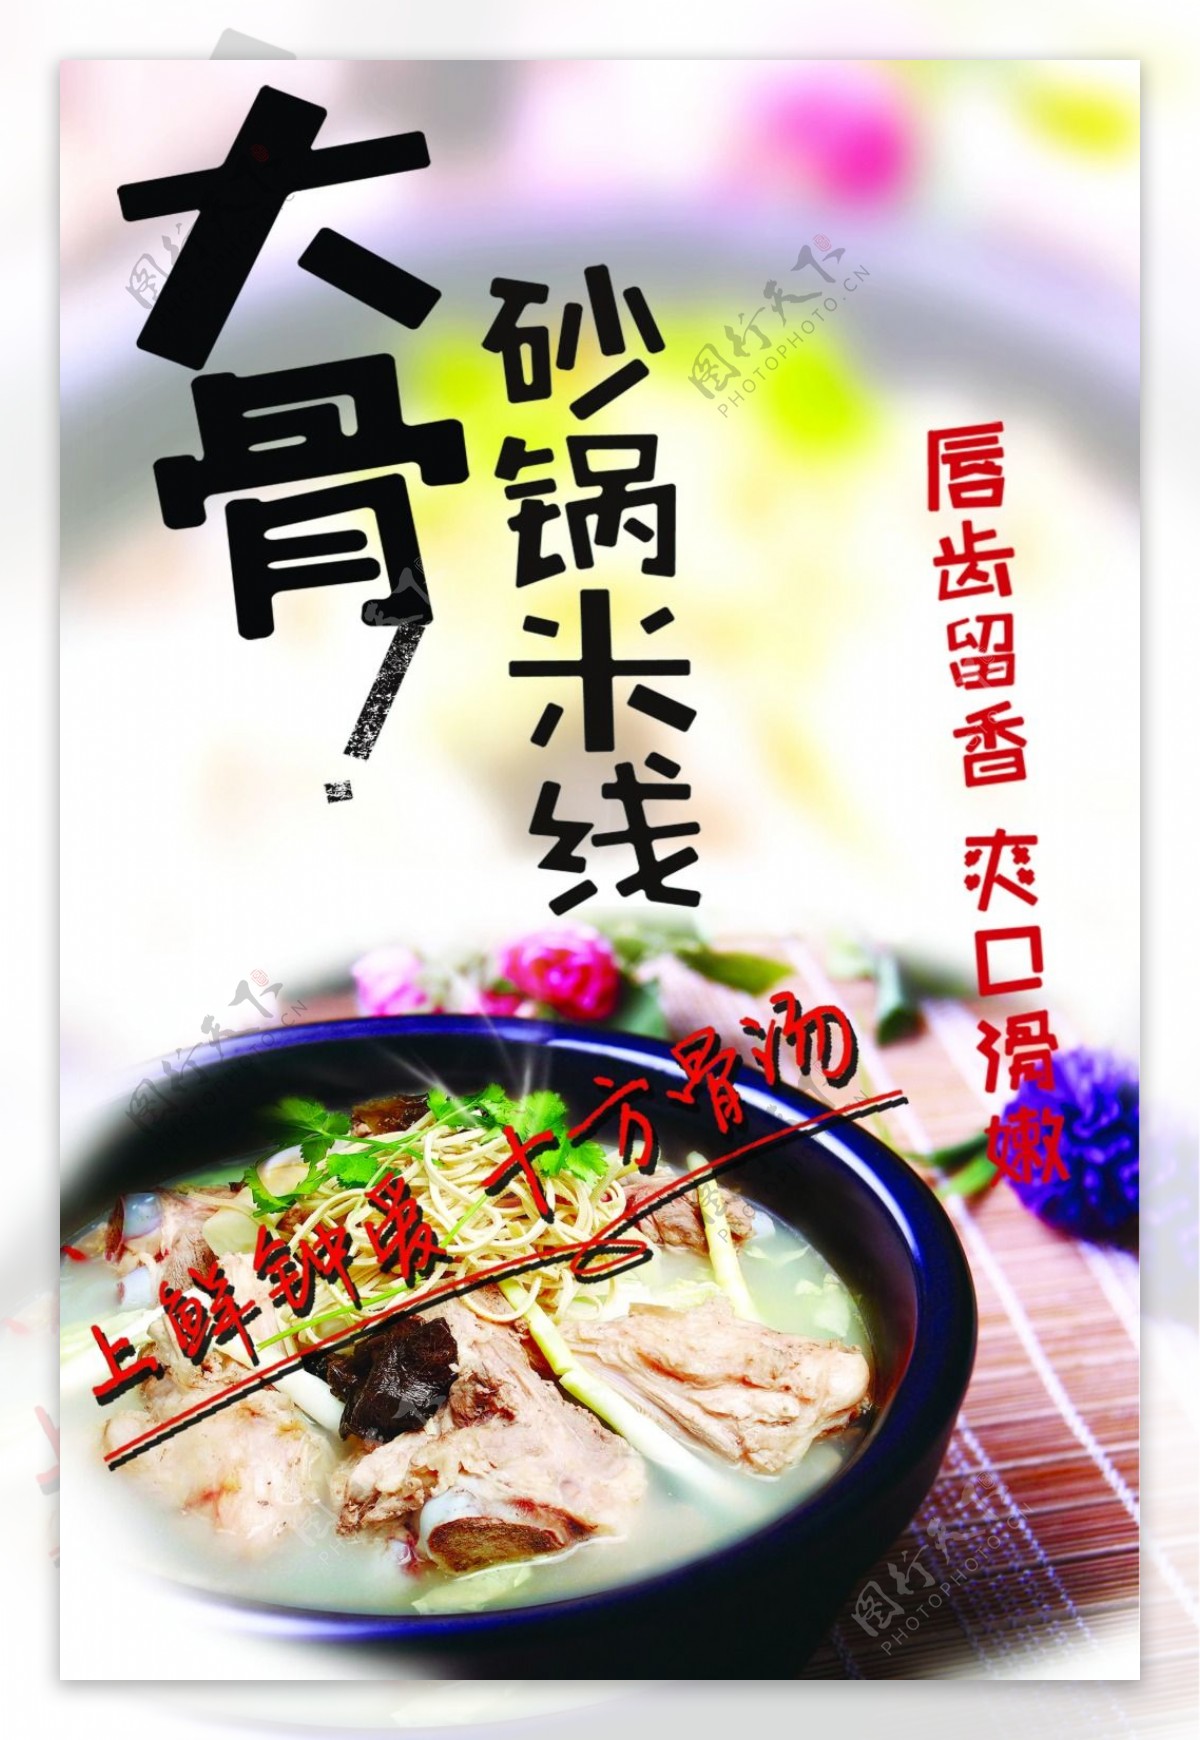 砂锅米线美食宣传海报